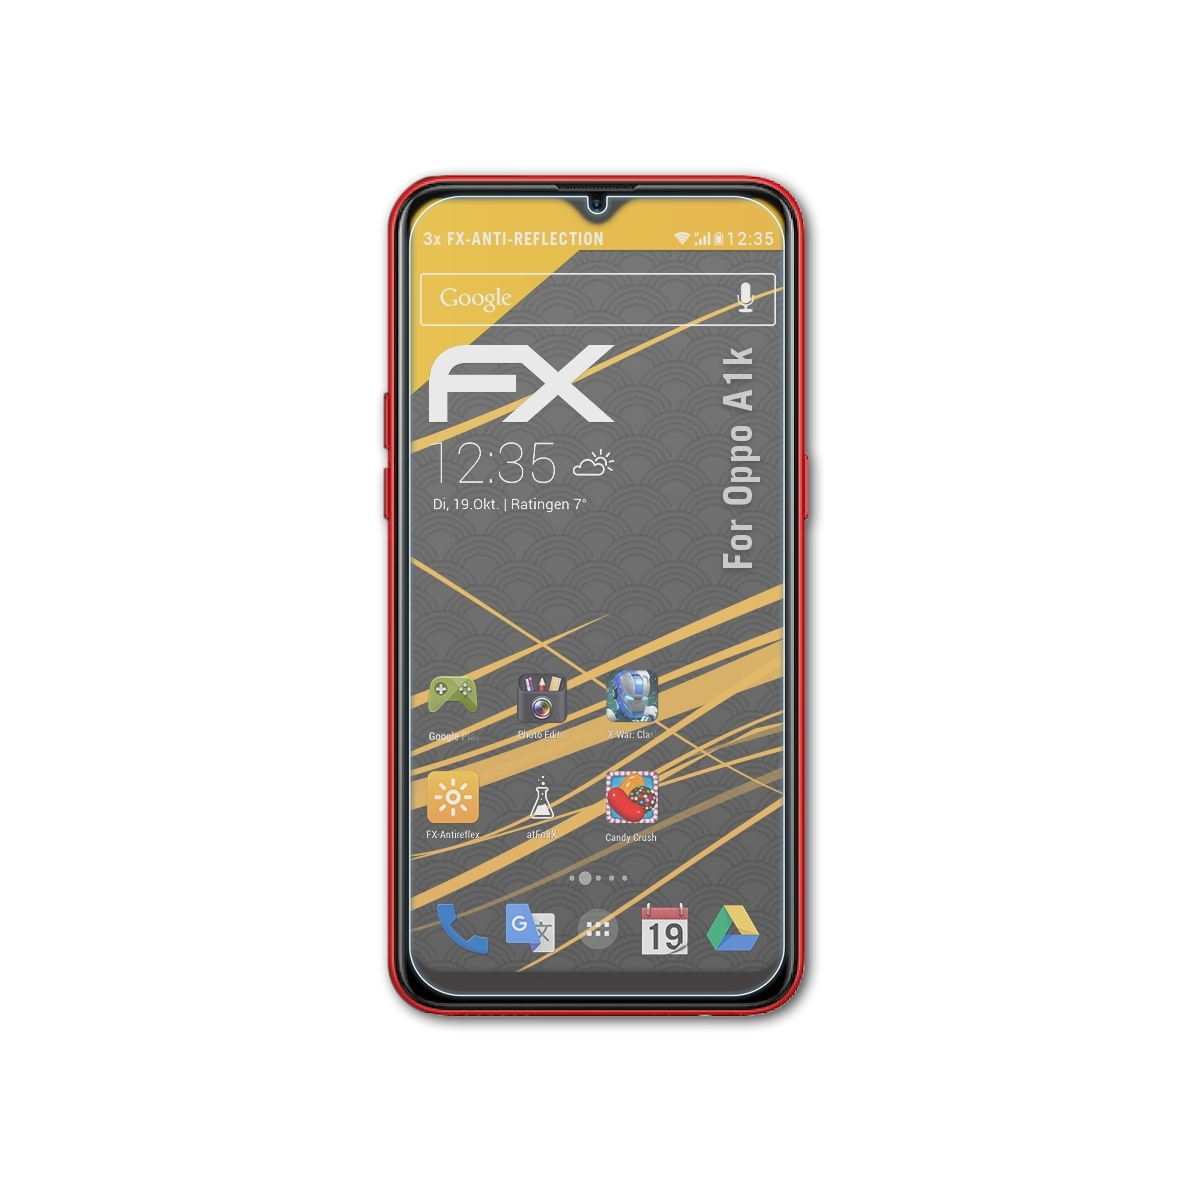 Oppo 3x Displayschutz(für ATFOLIX FX-Antireflex A1k)